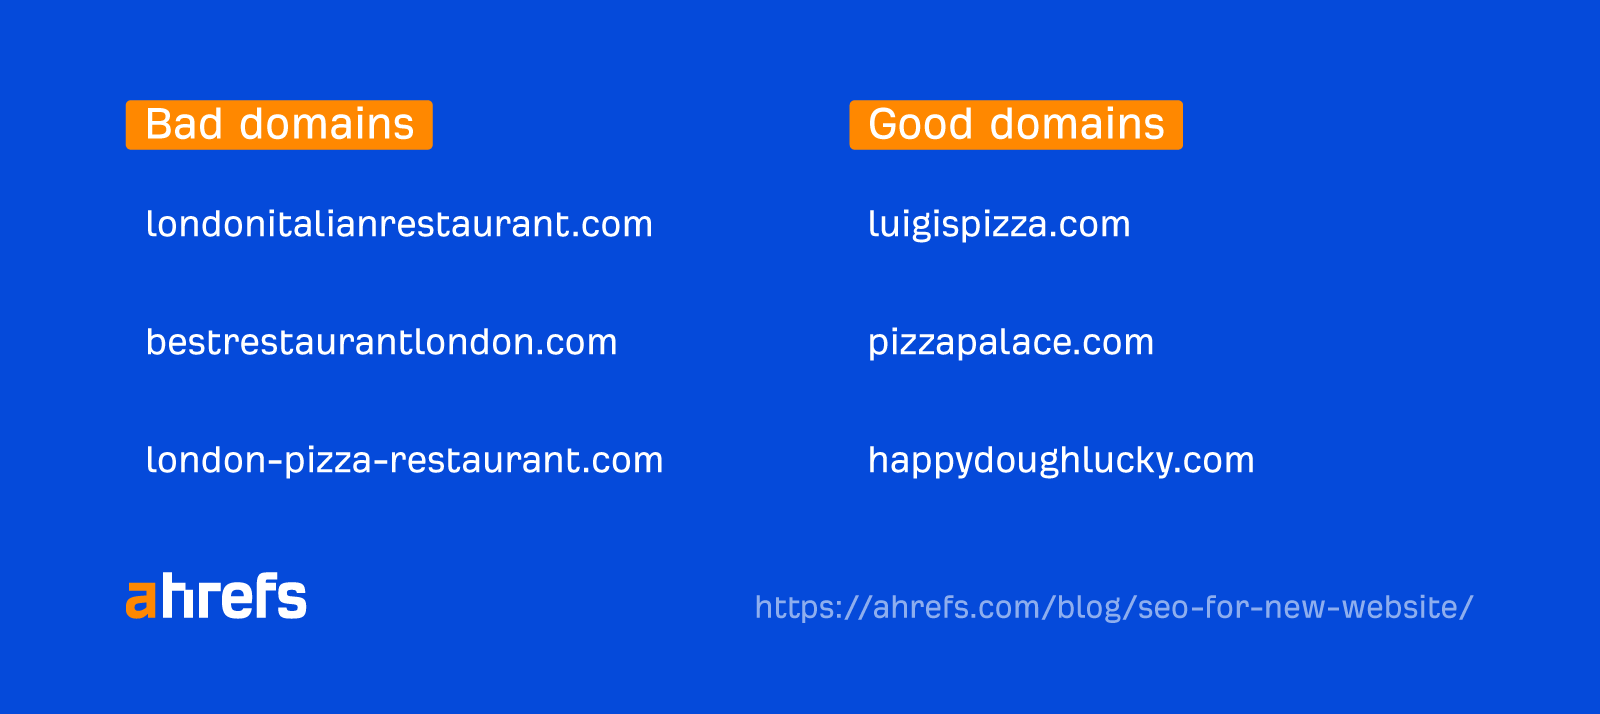 Bad domains vs. good domains